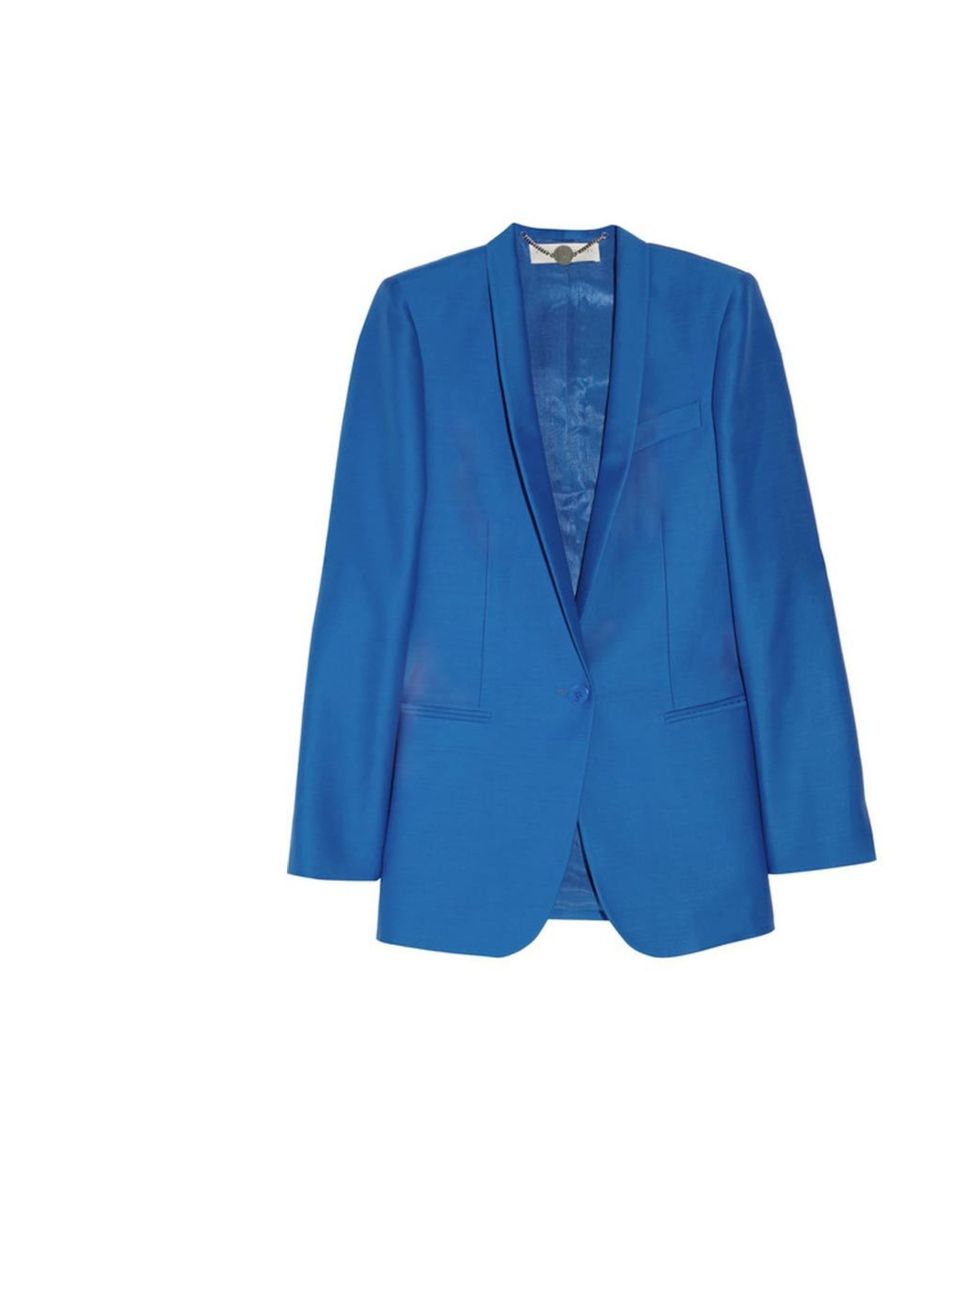 <p>Stella McCartney 'Elliot' wool &amp; silk-blend blazer, £1,230, at <a href="http://www.net-a-porter.com/product/191857">Net-a-Porter</a></p>